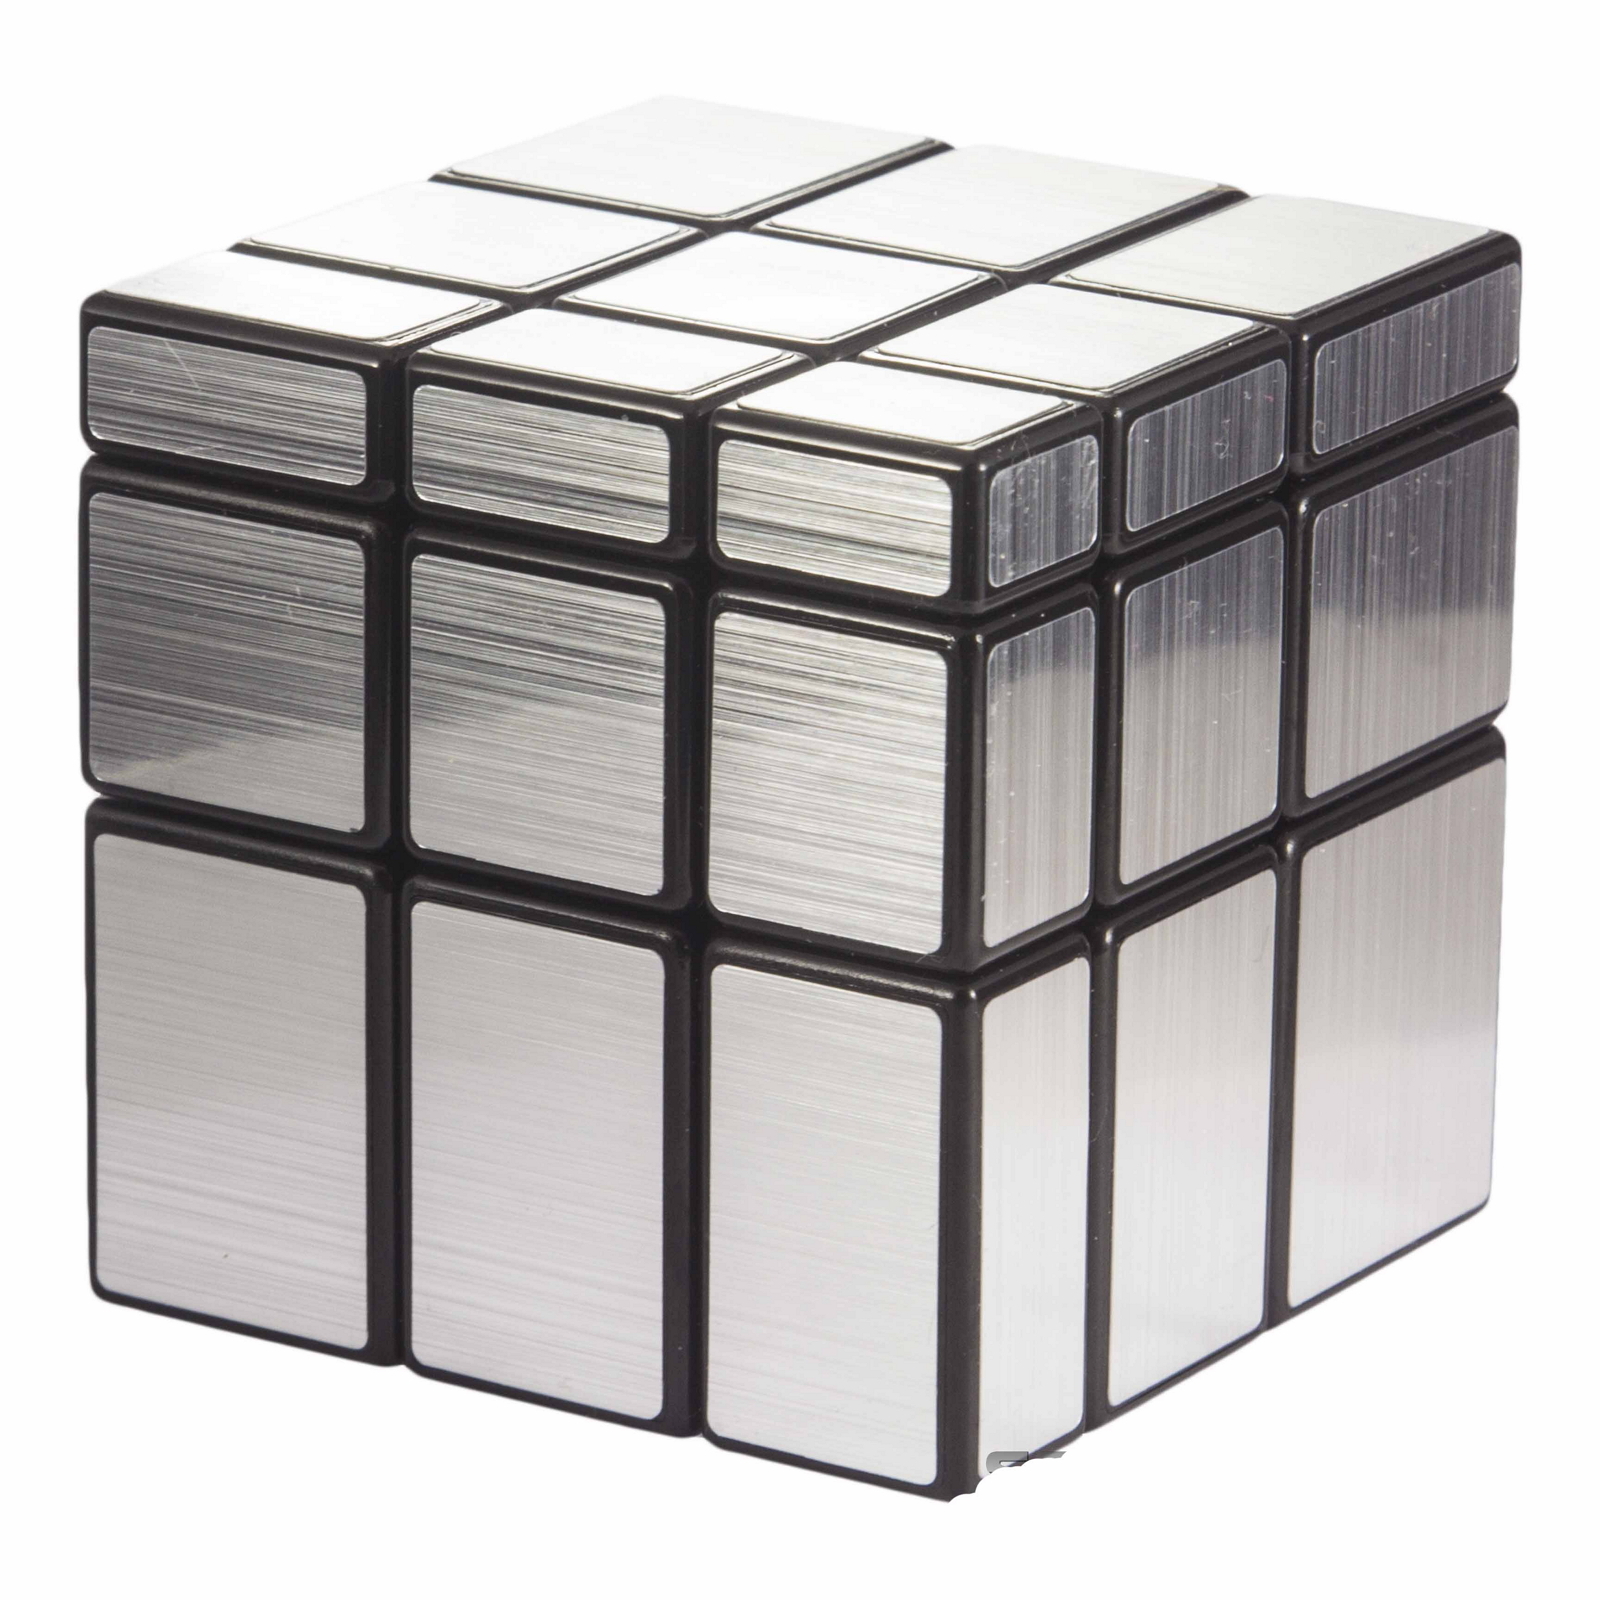 Зеркальный кубик 3х3 серебро